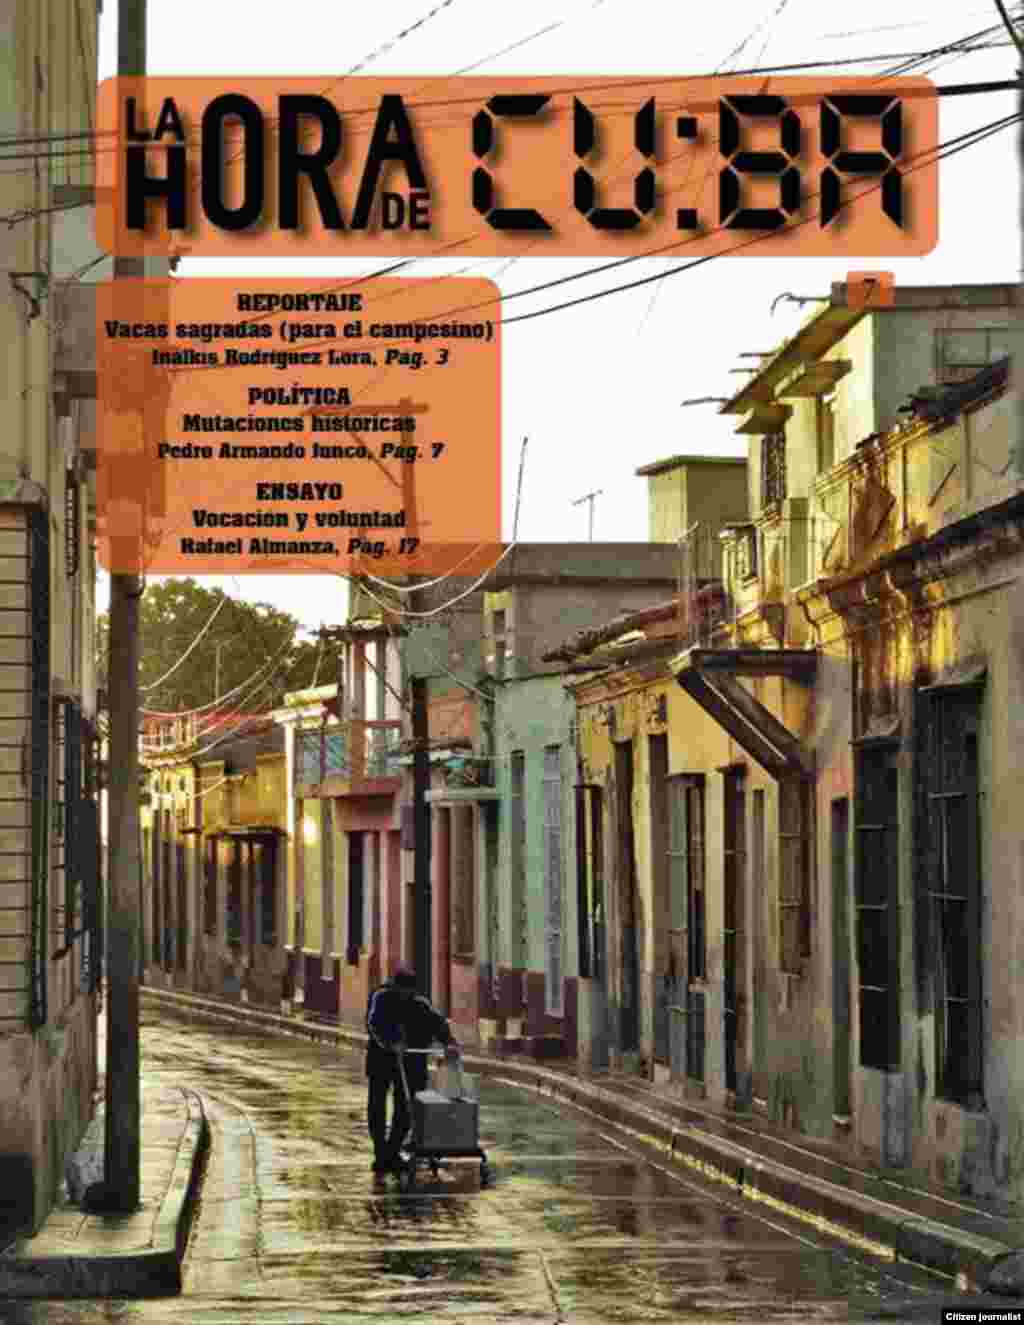 La Hora de Cuba en su septima edición